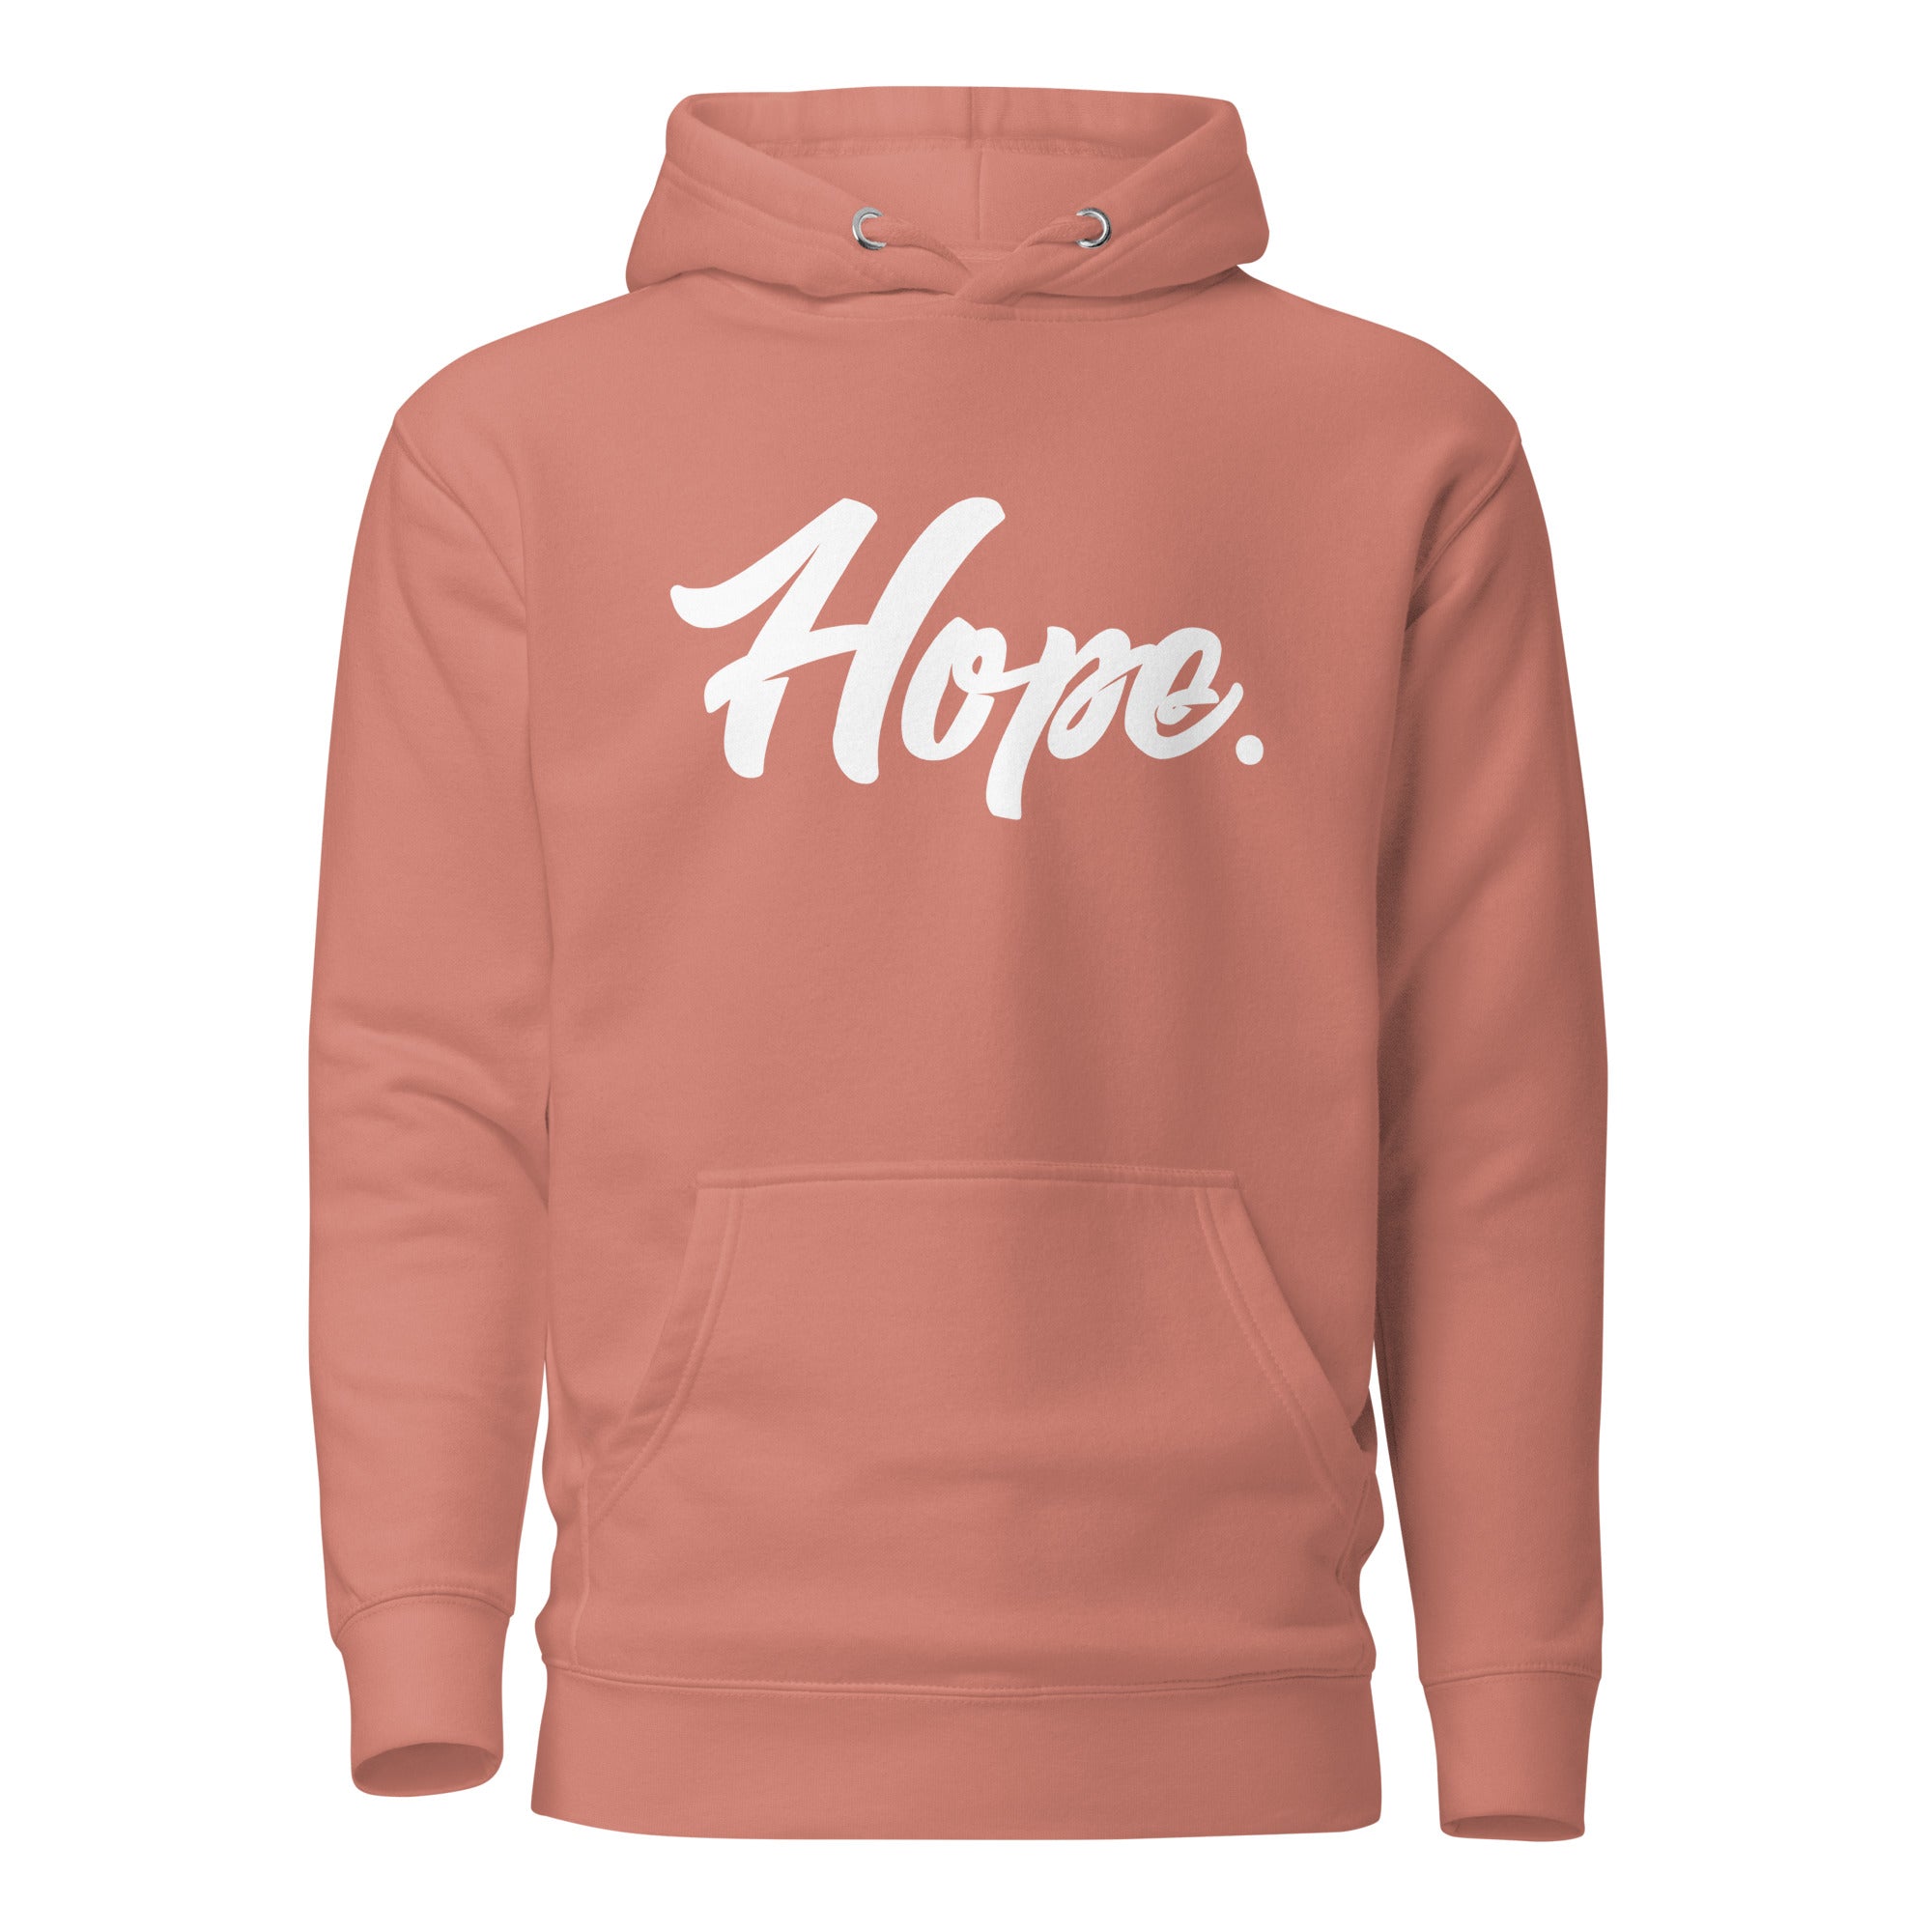 Hope. Hoodie